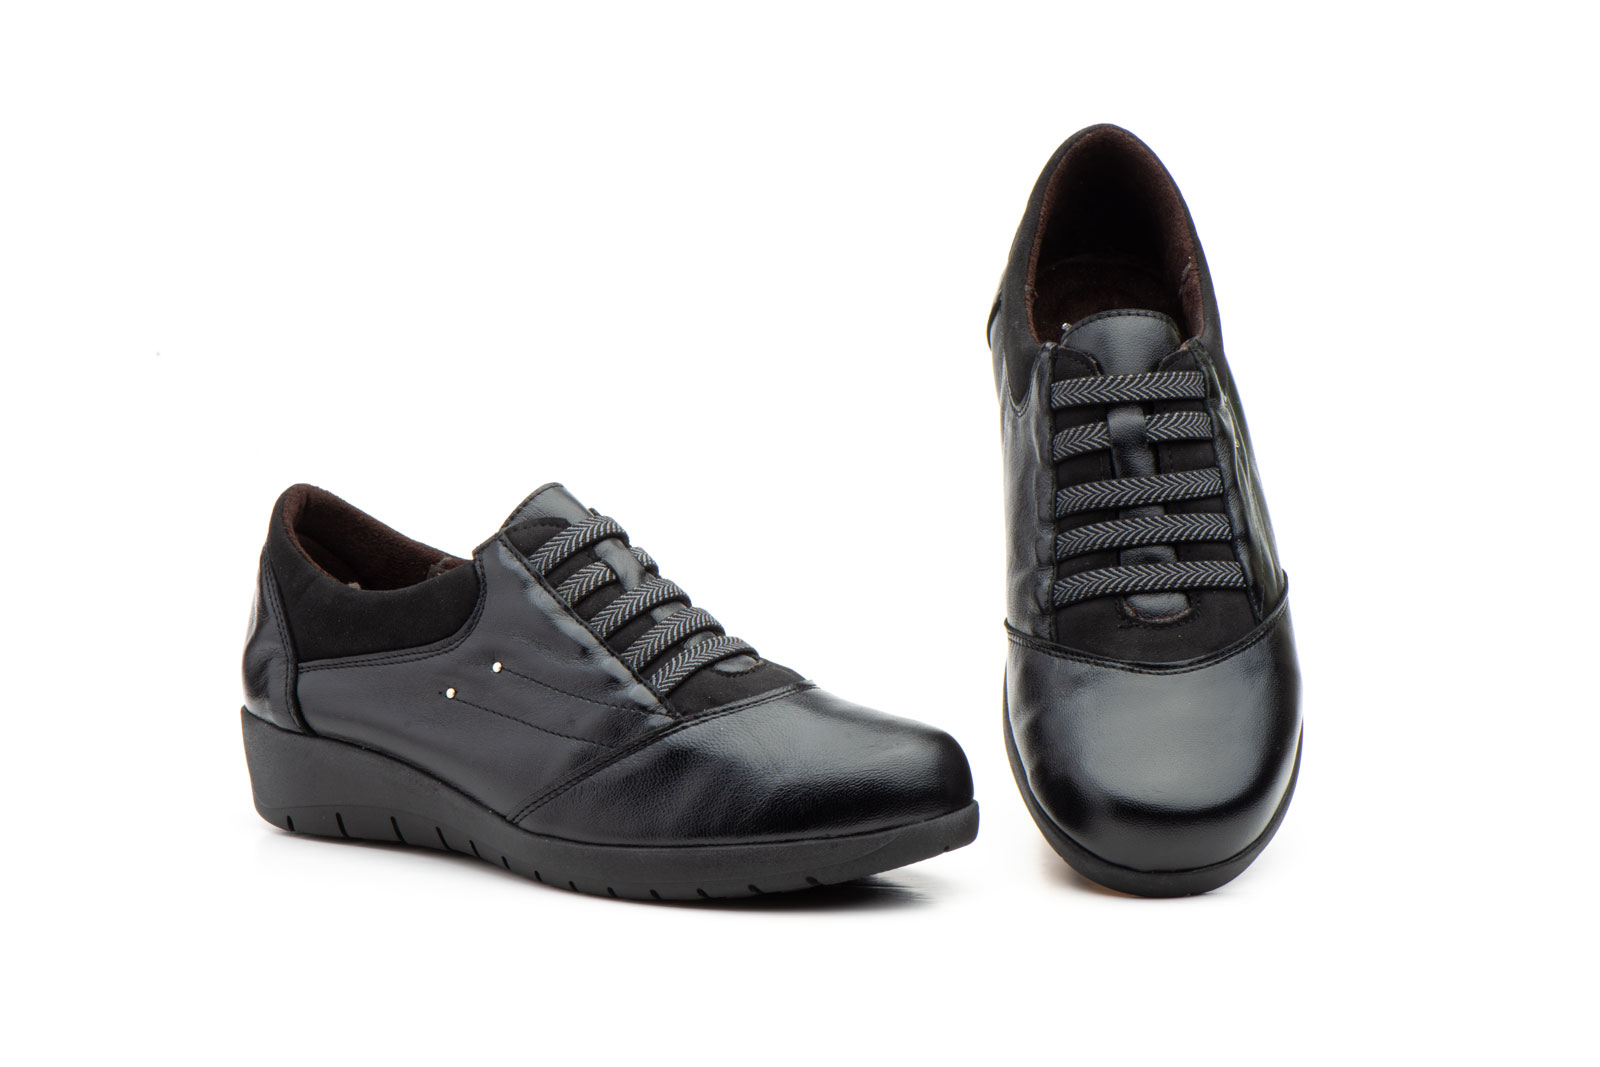 Zapatos Mujer Piel Negro Elásticos  -  Ref. 5567 Negro